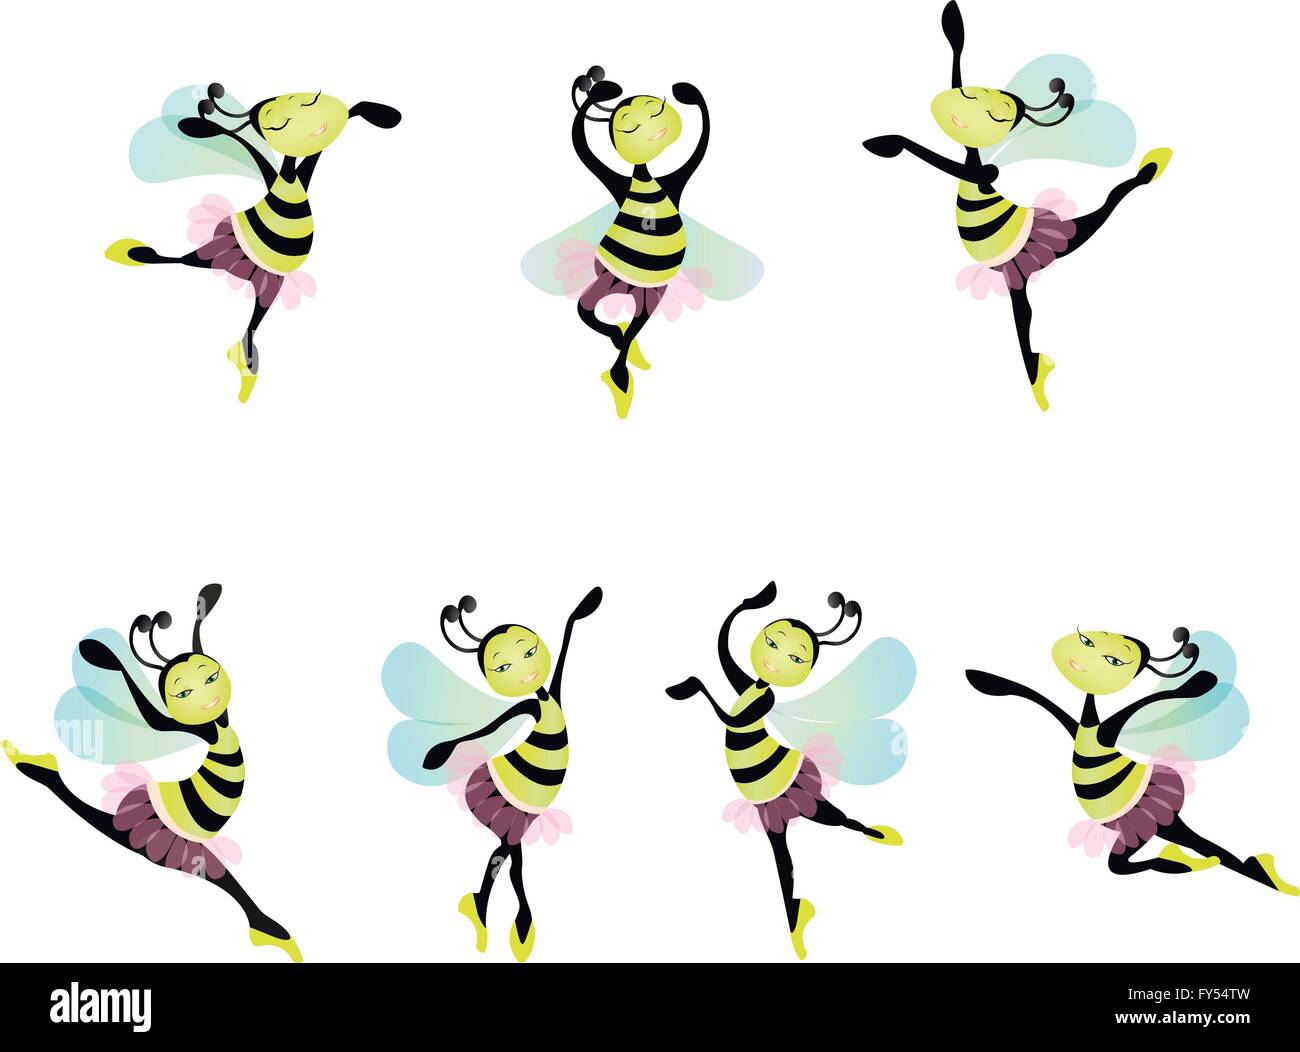 Dancing ballerina bees Stock Vector